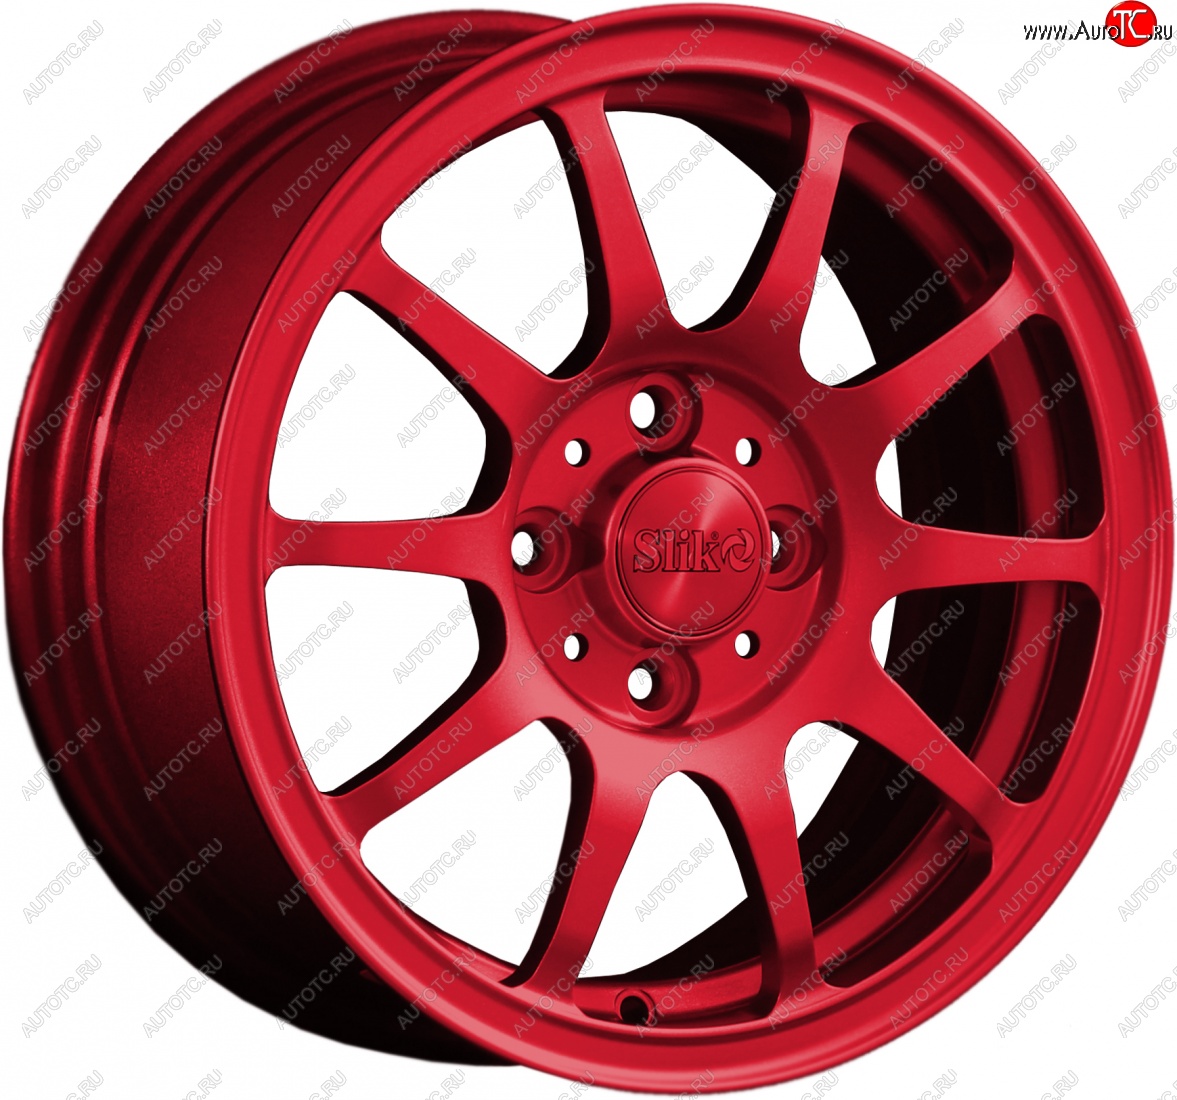 12 799 р. Кованый диск Slik Classik 6x14 (Красный) Alfa Romeo 146 930B лифтбэк (1995-2000) 4x98.0xDIA58.1xET35.0 (Цвет: Красный)